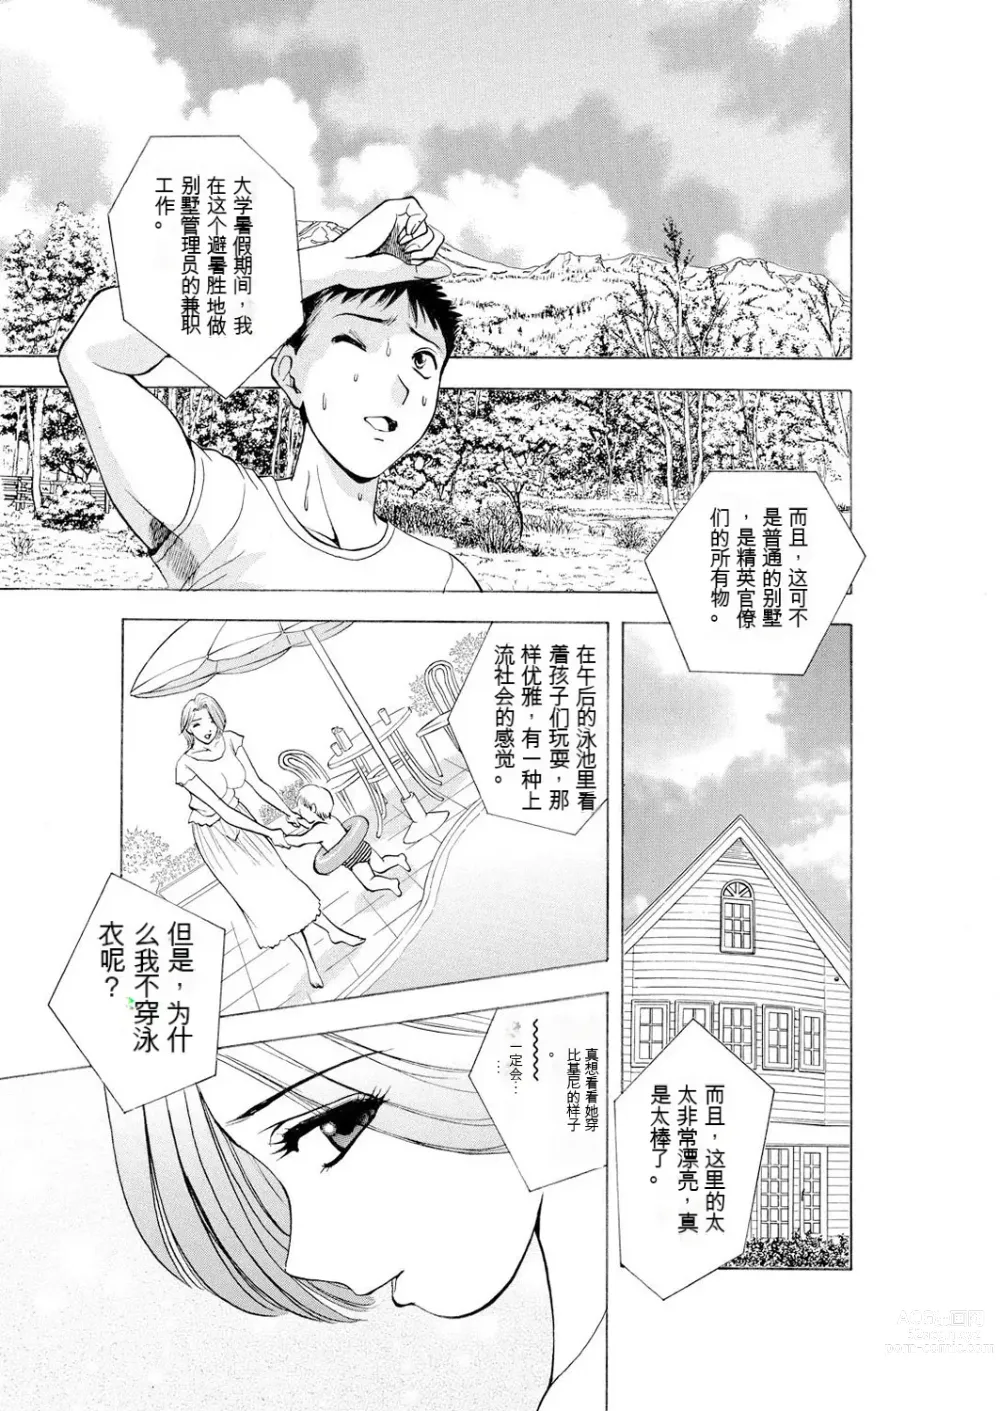 Page 3 of manga Netorare